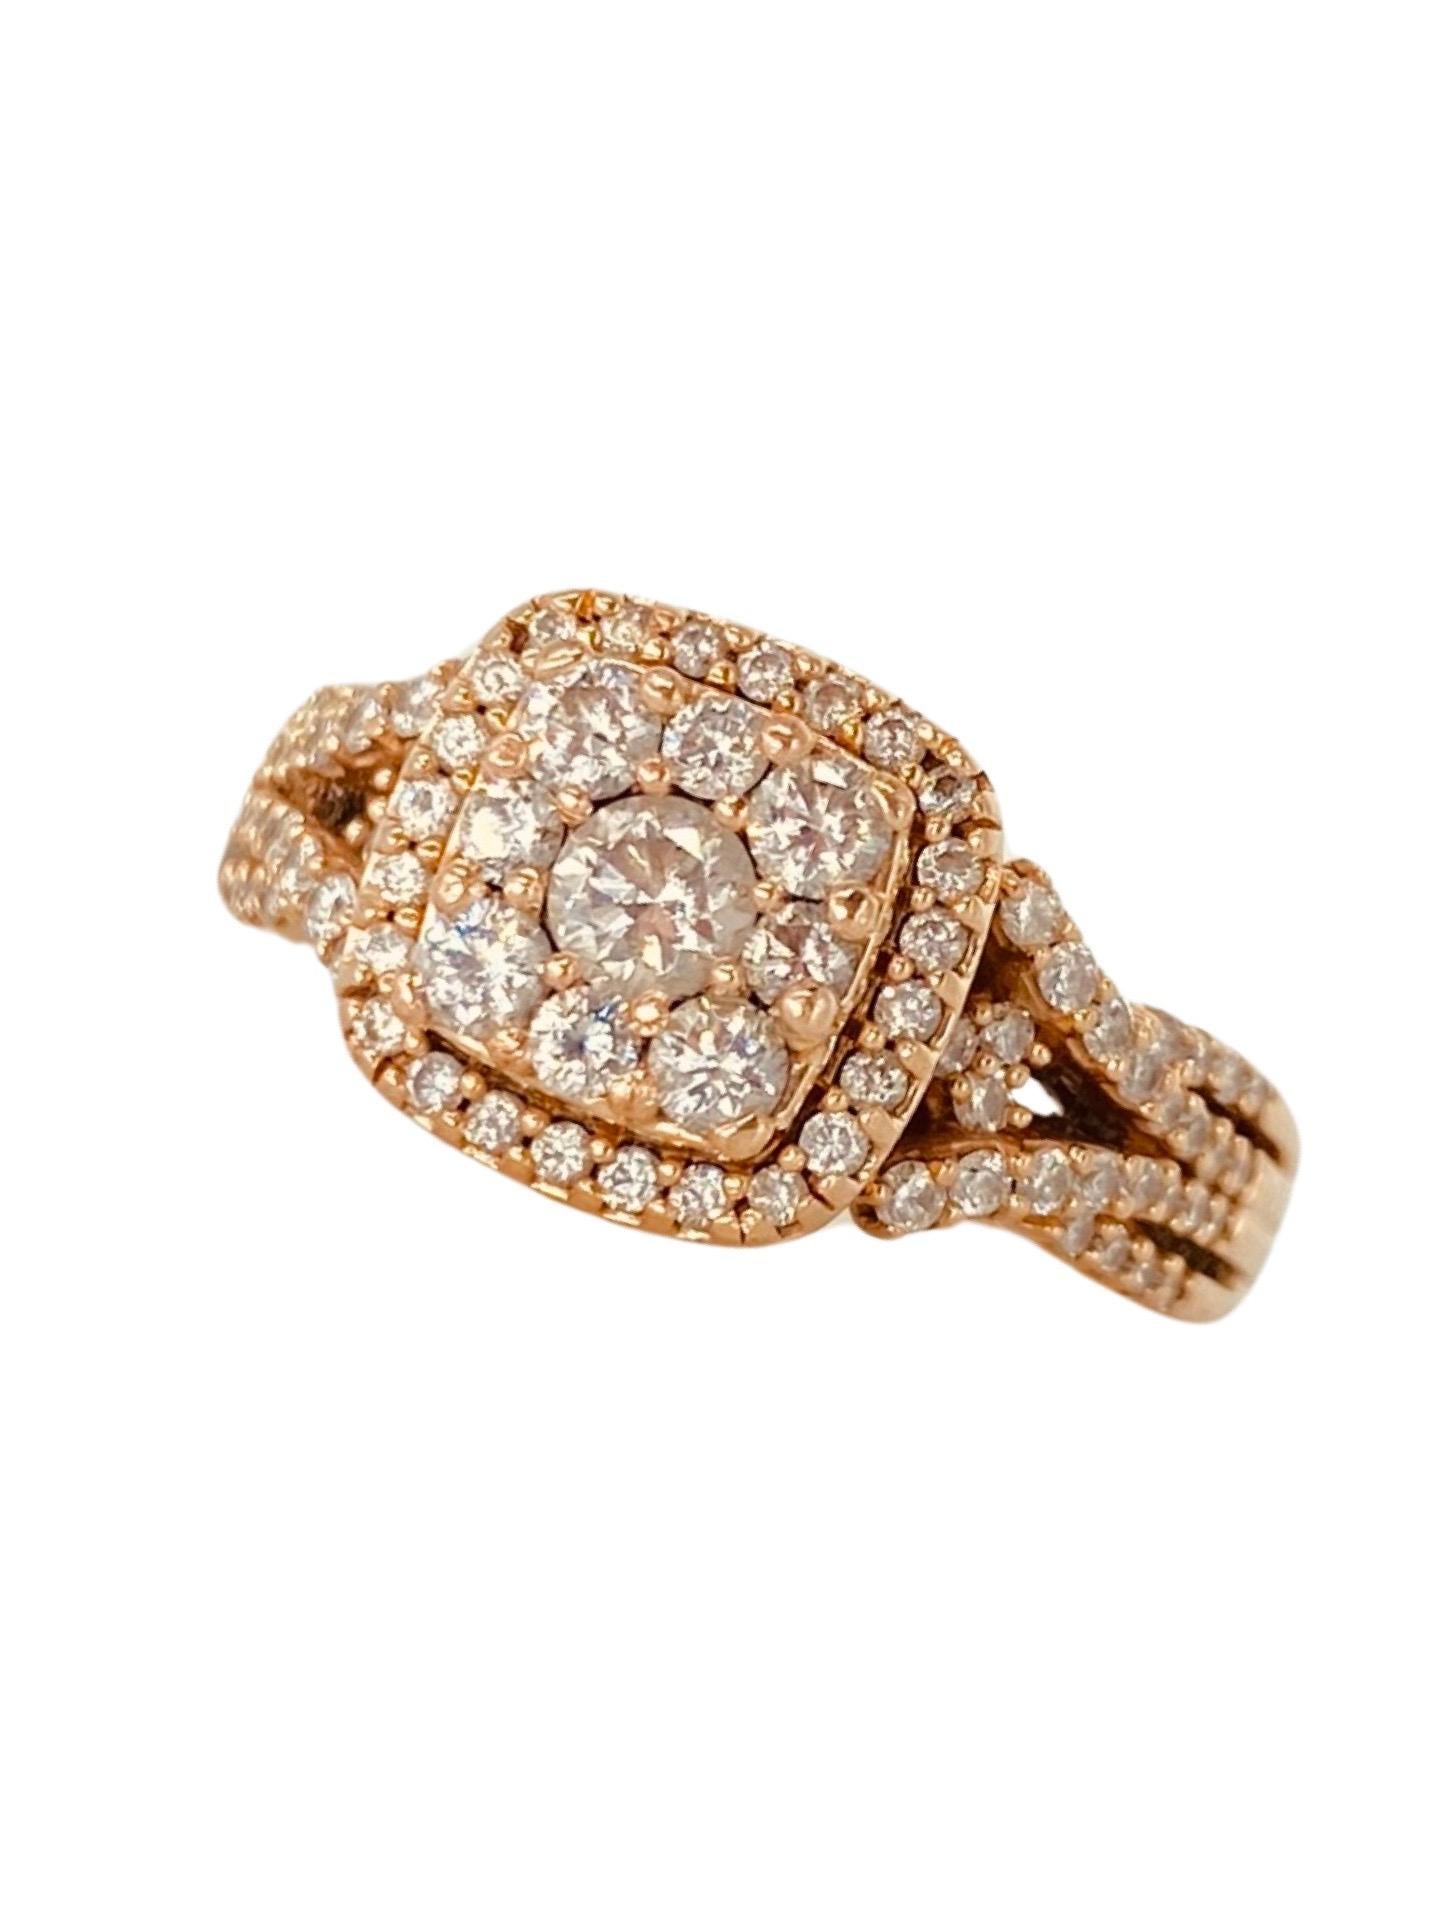 Vintage 1,50 Karat Gesamtgewicht in Diamanten Ring 14k Rose Gold. Die Arbeit des Designers an diesem Ring ist wunderschön und sehr beeindruckend. Bei der Untersuchung des Rings wird auf viele Details hingewiesen. An den Seiten des Rings befinden